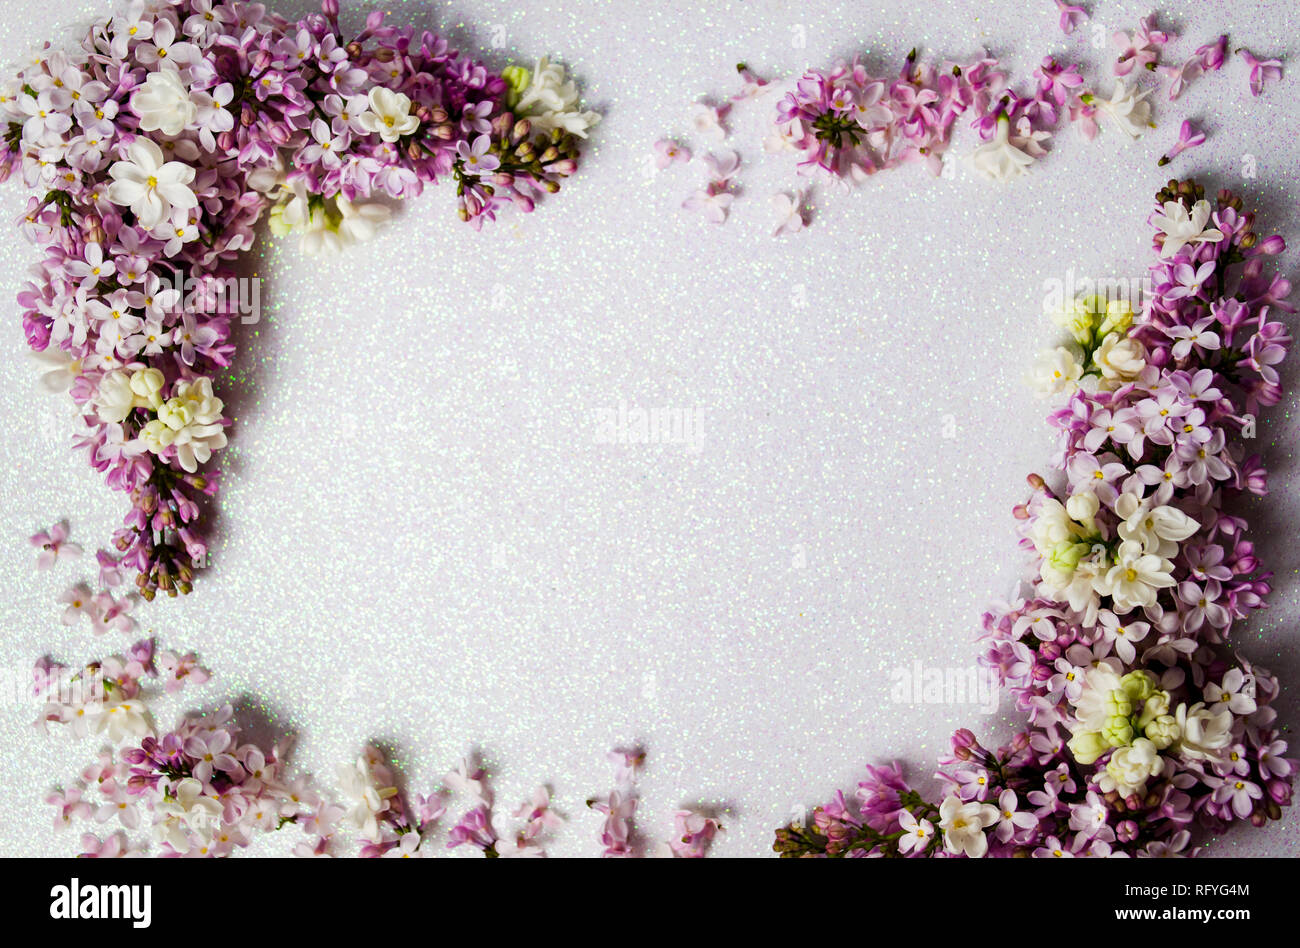 Lila y flores de primavera arreglo con vista superior del espacio de copia Foto de stock